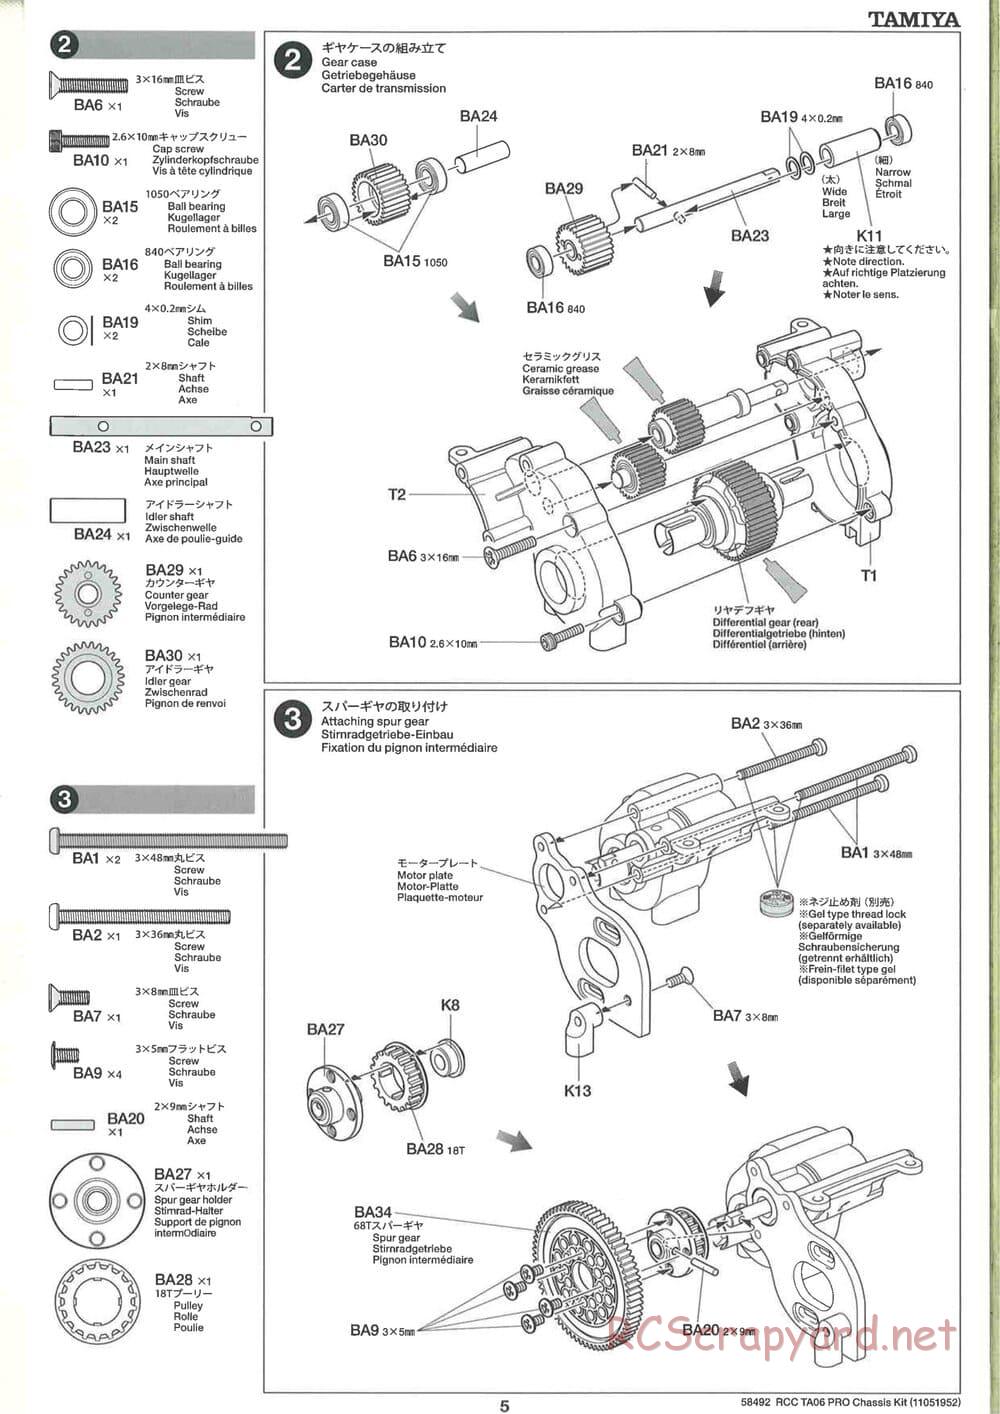 Tamiya - TA06 Pro Chassis - Manual - Page 5